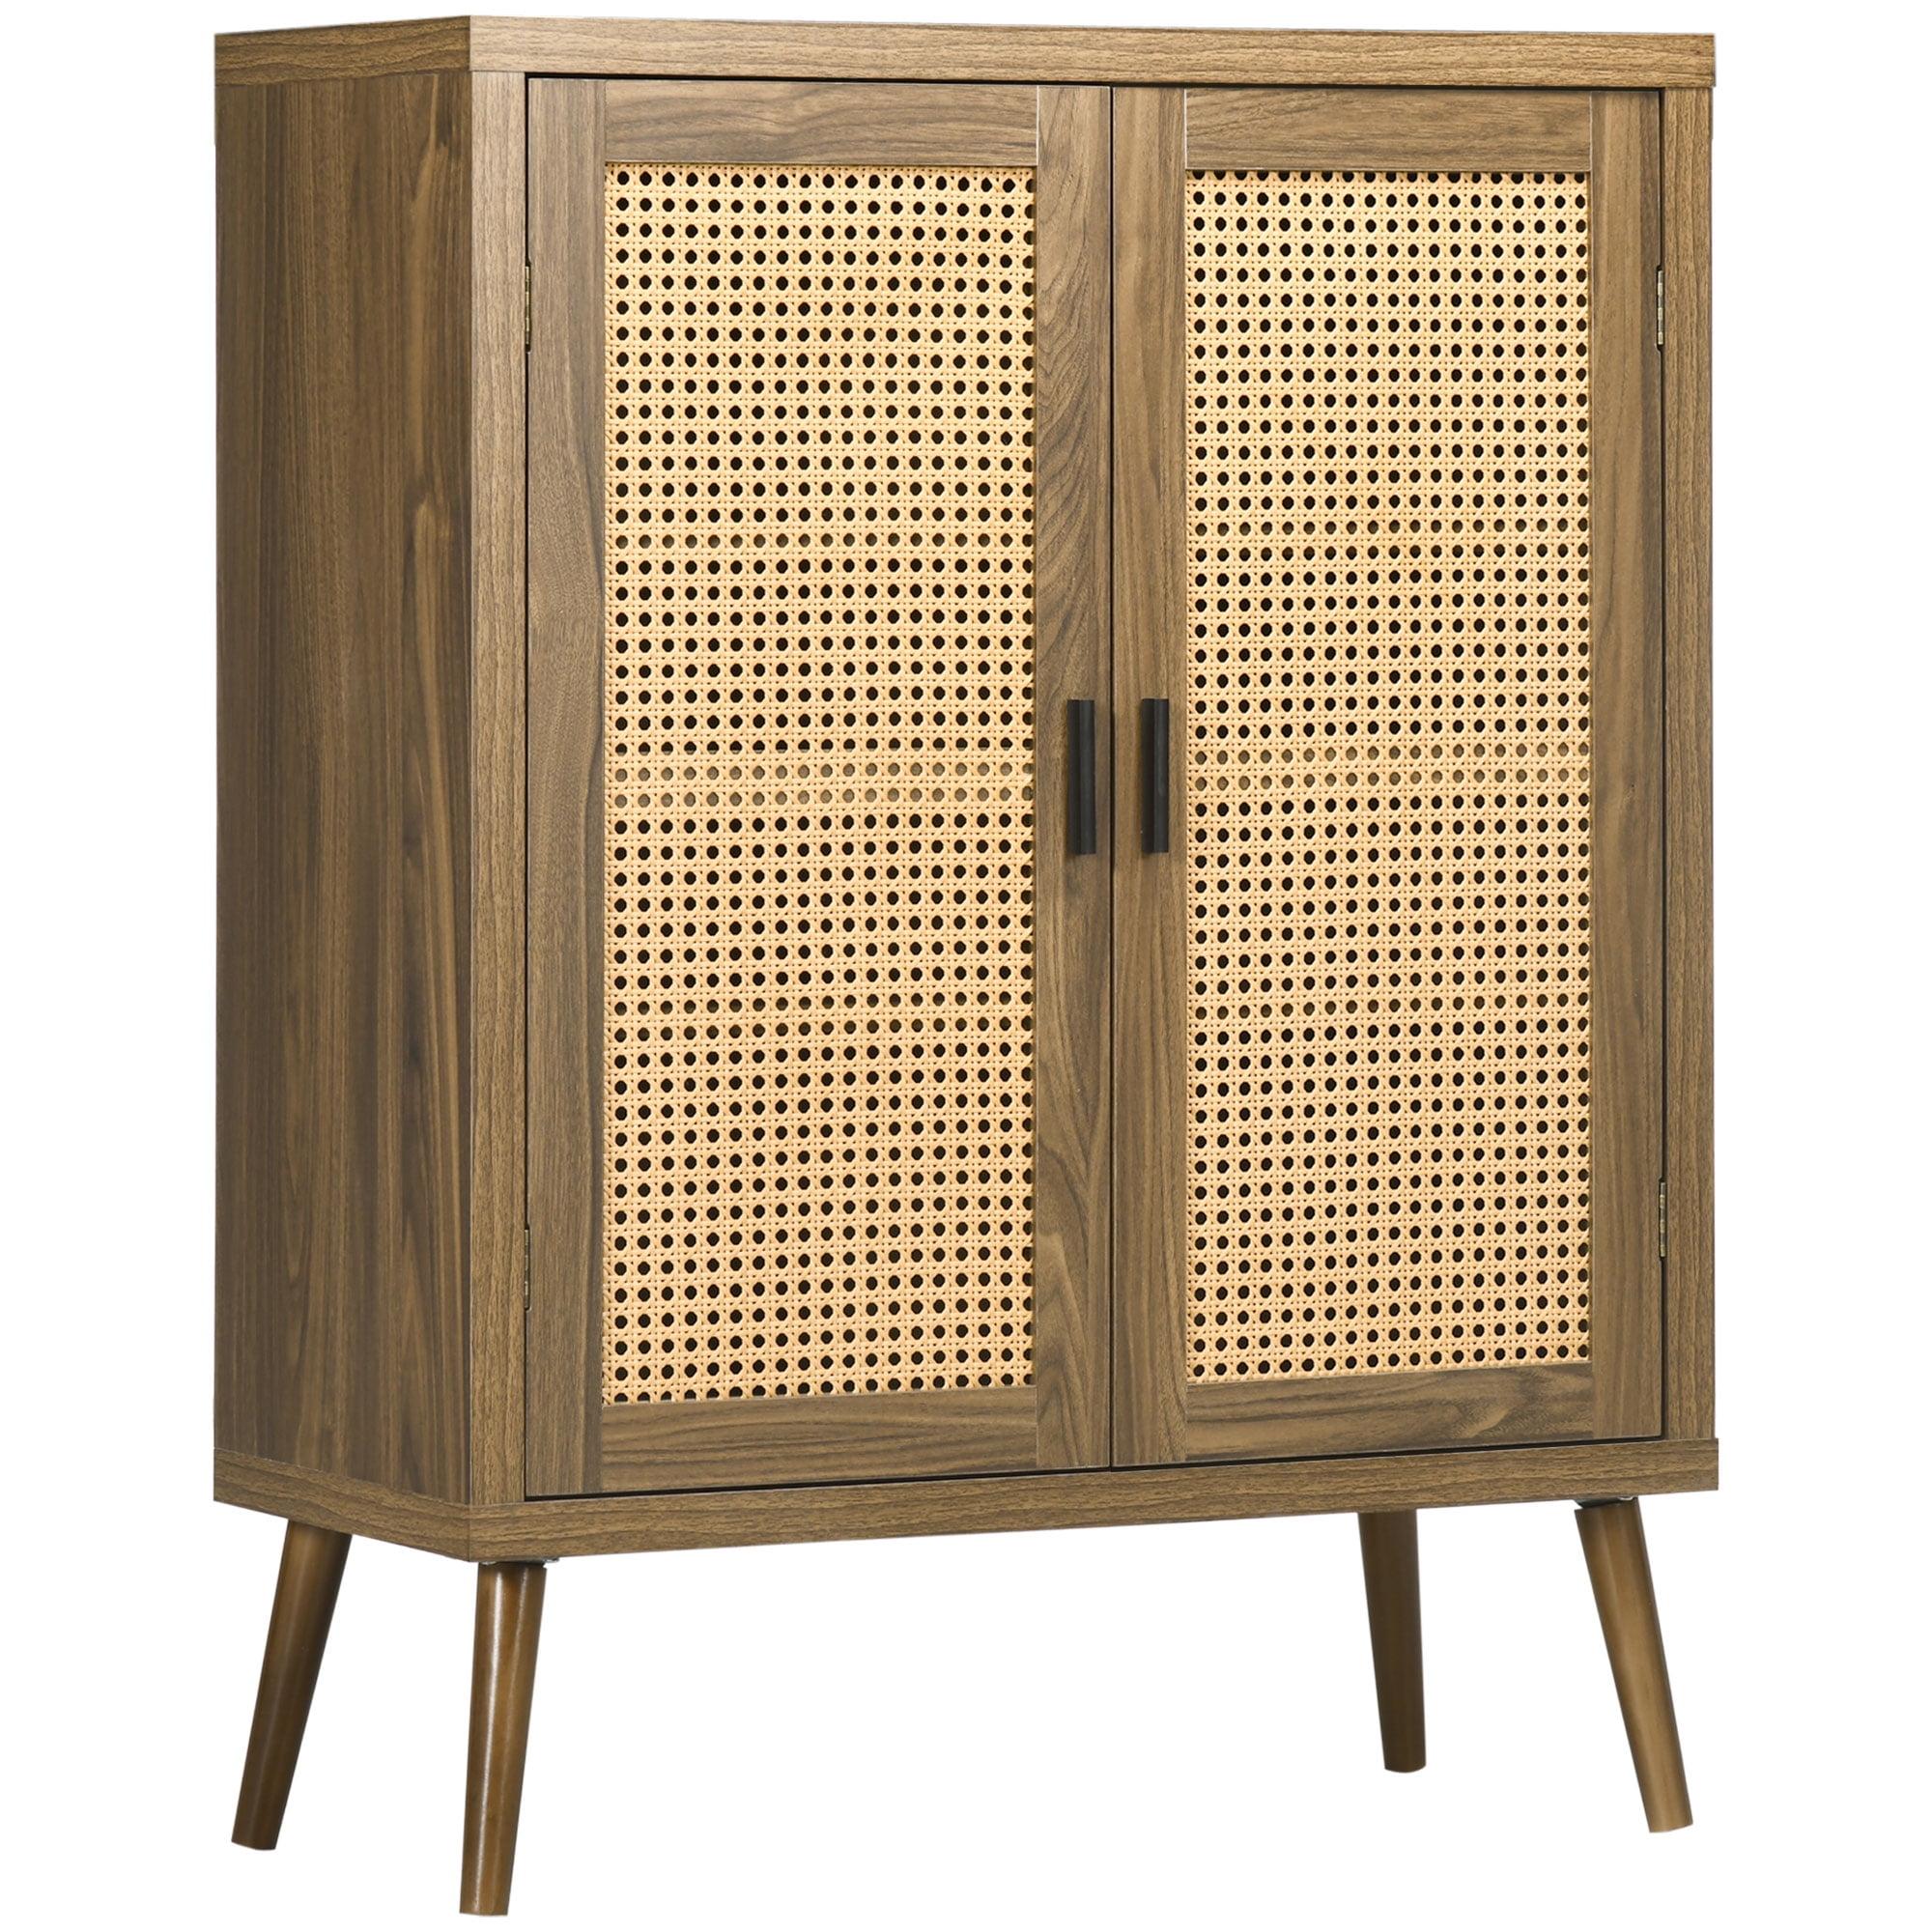 Versatile Brown Sideboard Buffet Cabinet with Rattan Doors